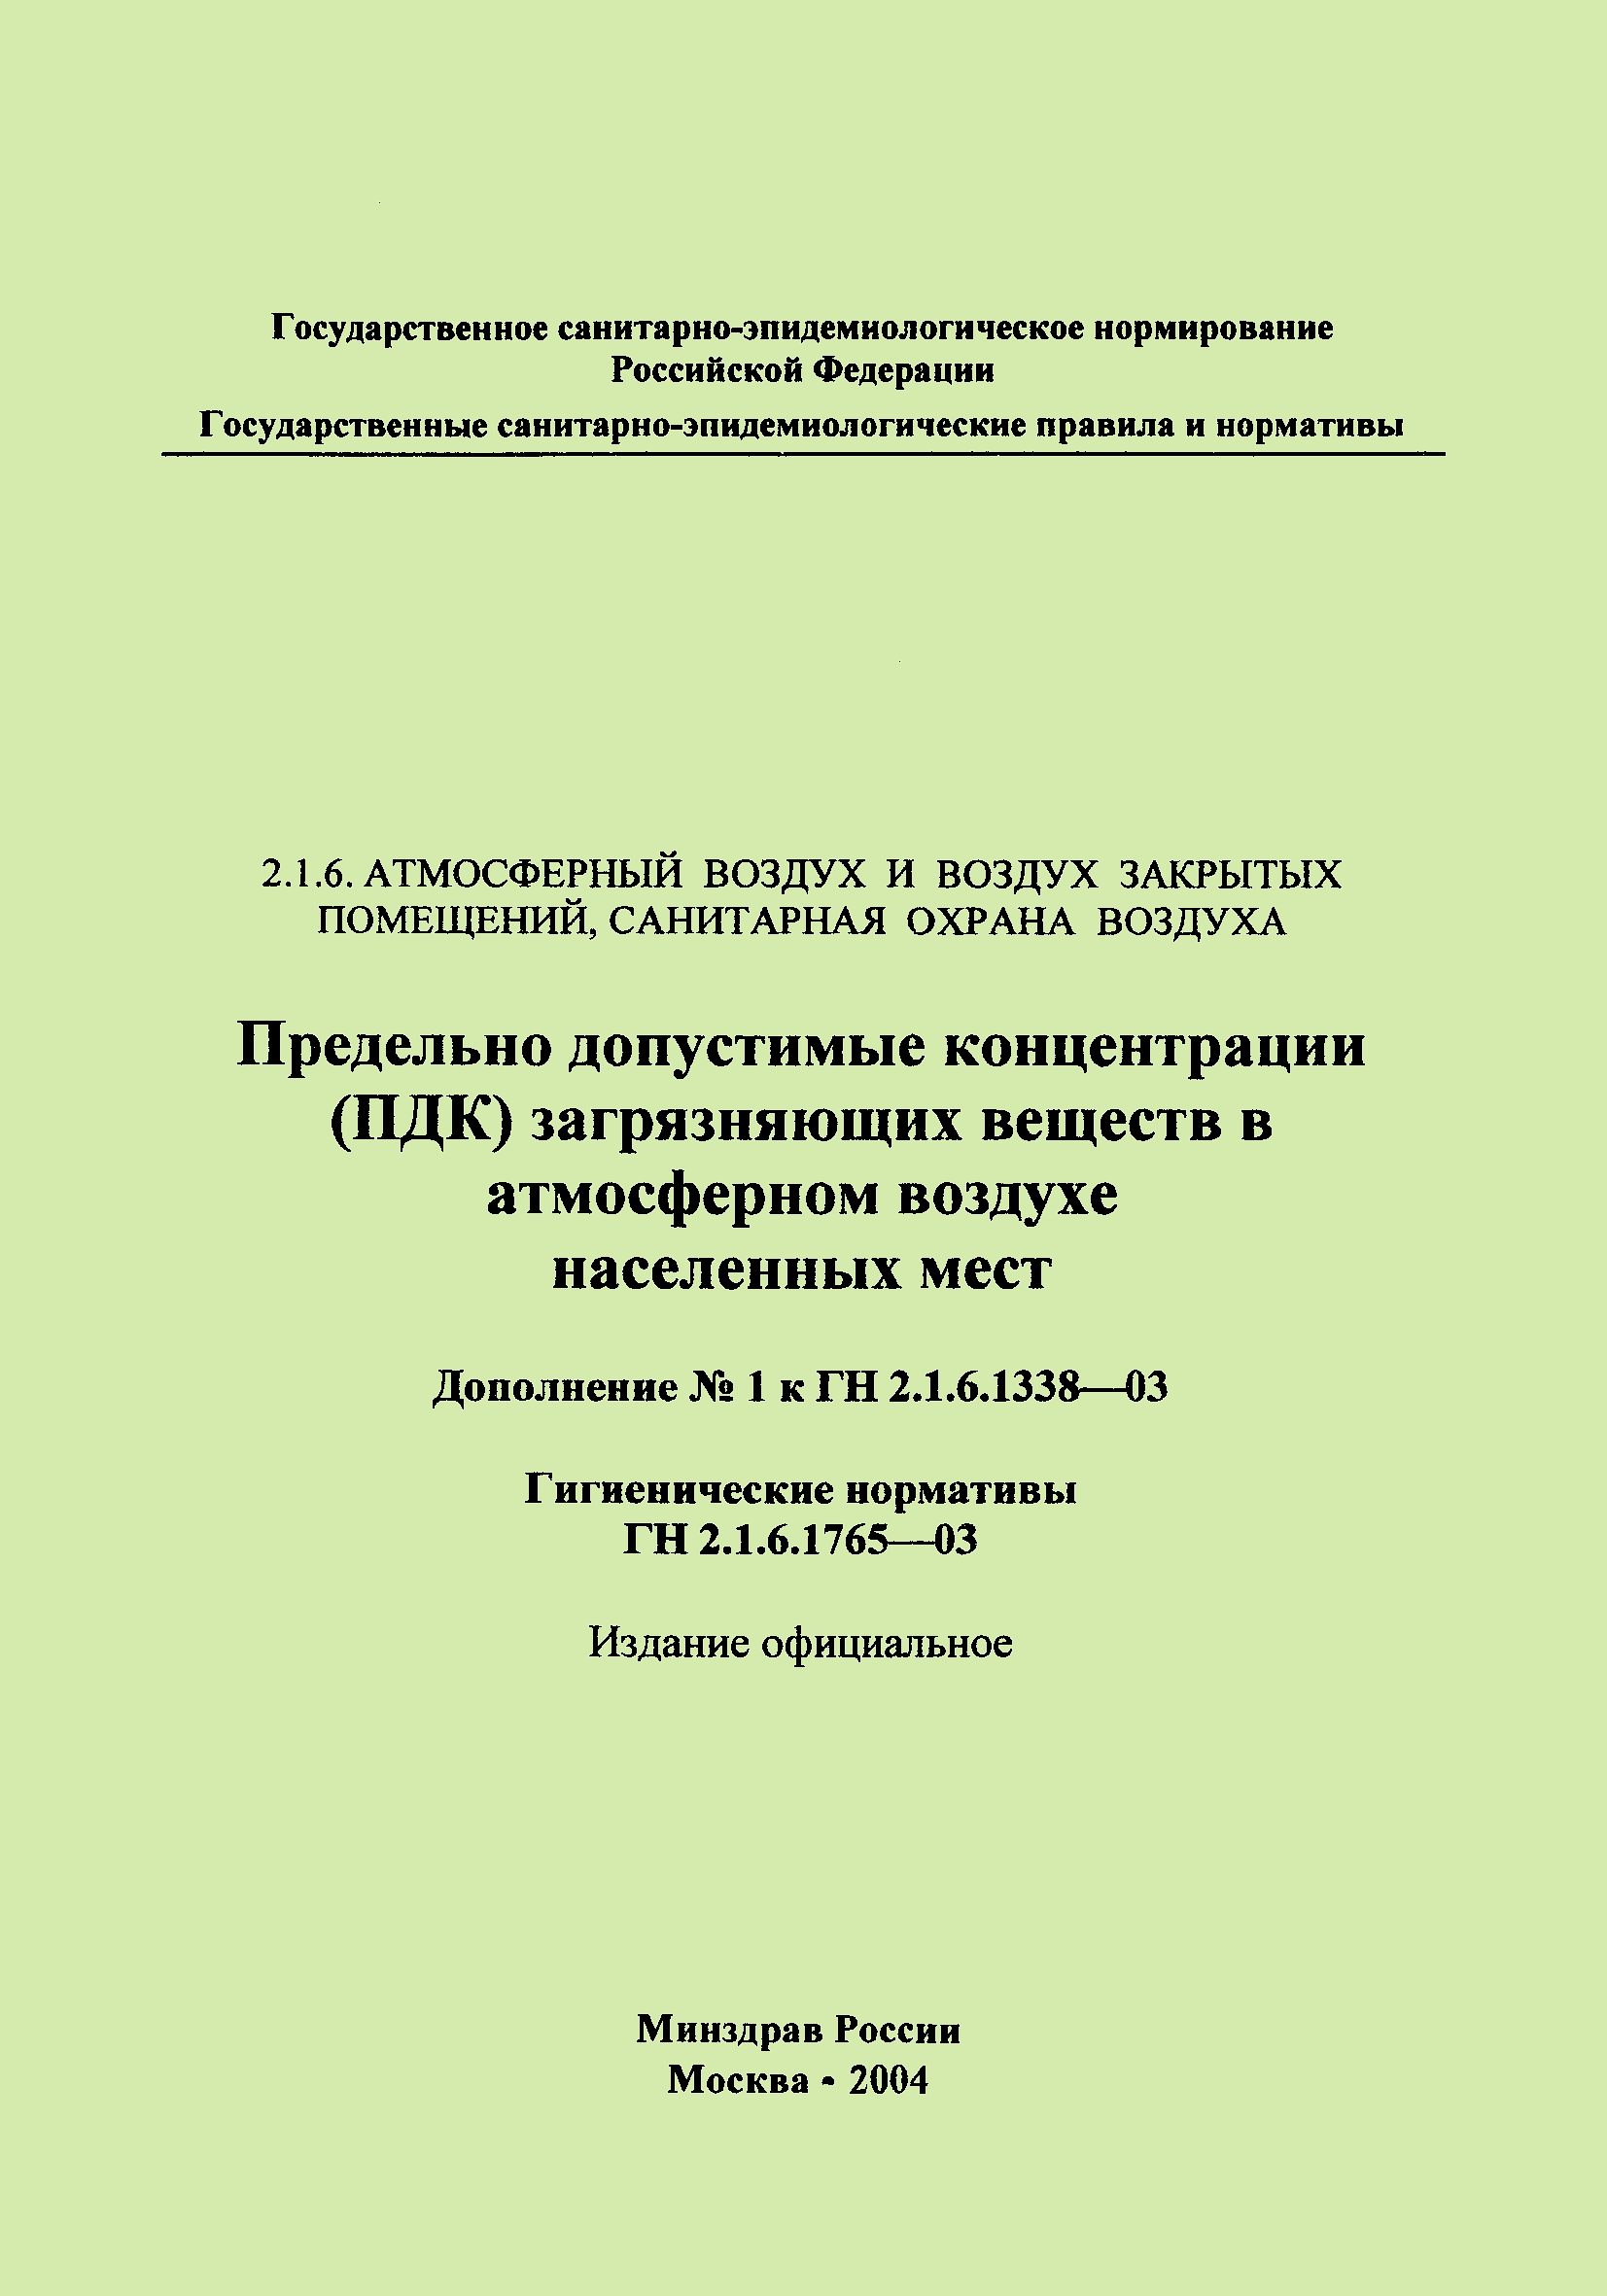 № ГН 2.1.6.1765-03